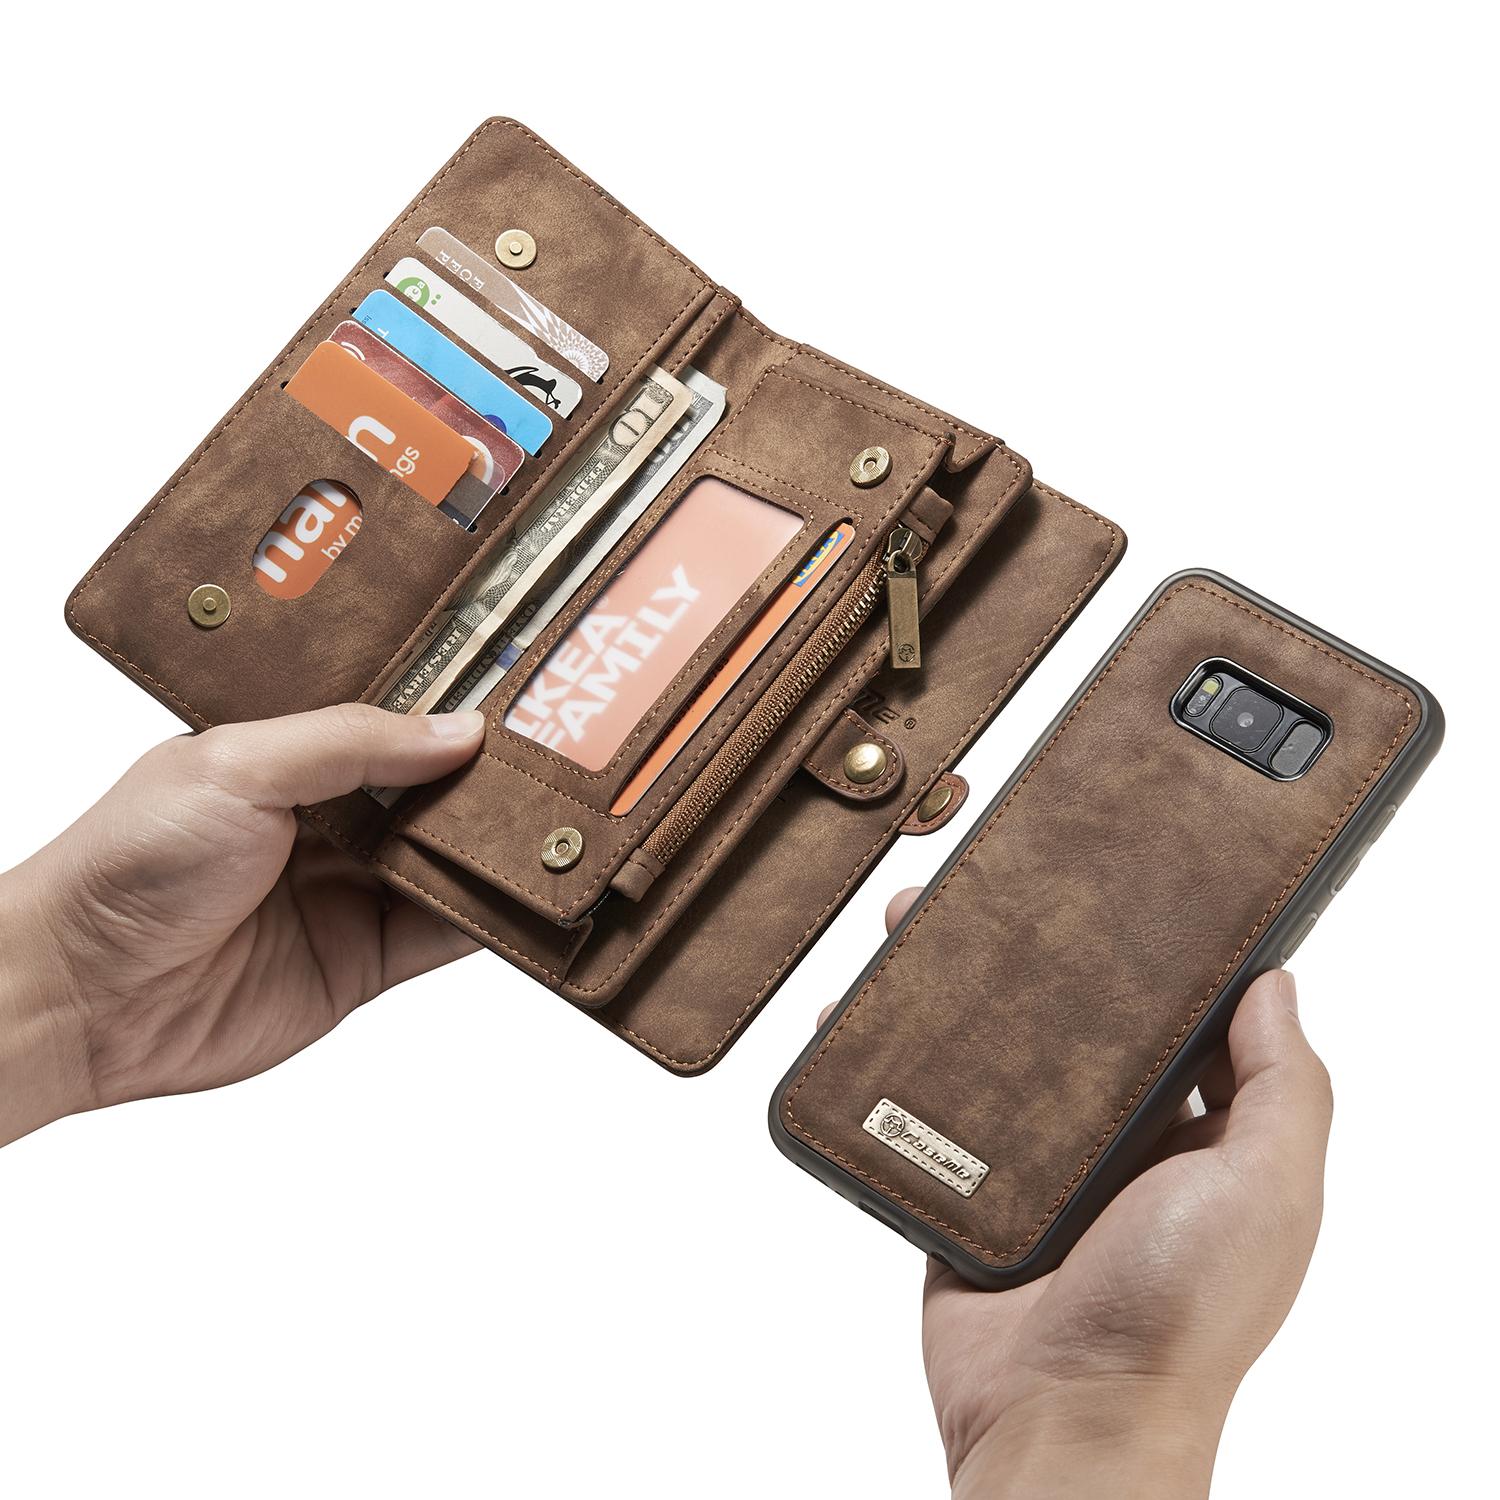 Samsung Galaxy S8 Multi-slot Wallet Case Brown